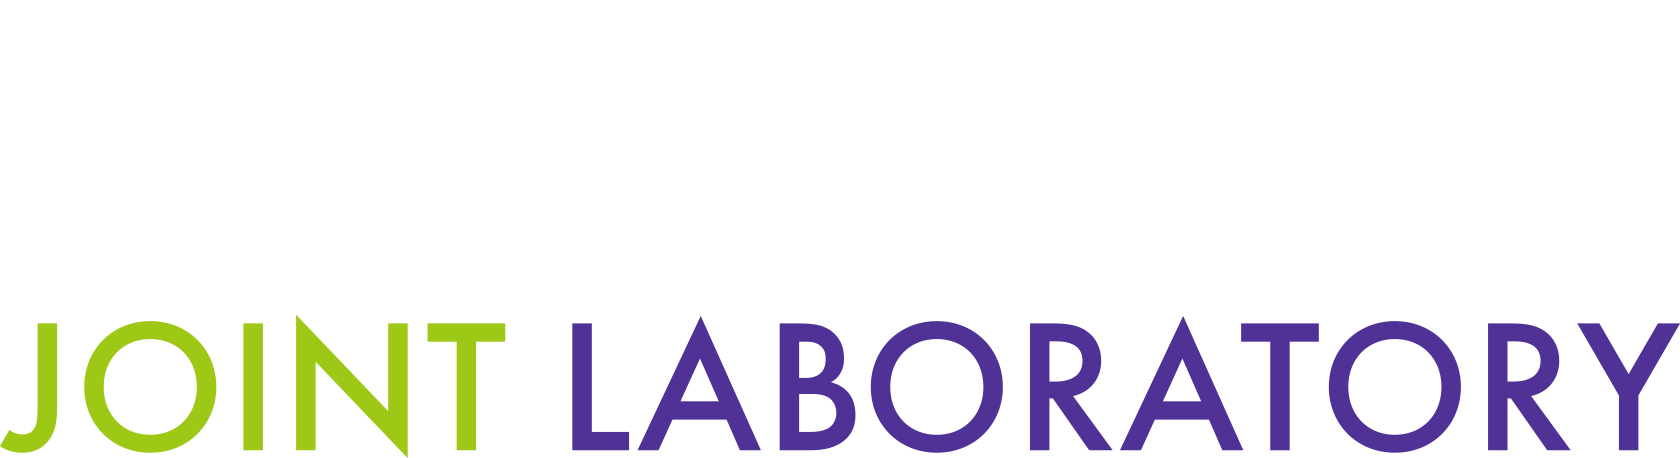 National Chiao Tung University & Tohoku University INTERNATIONAL JOINT LABORATORY